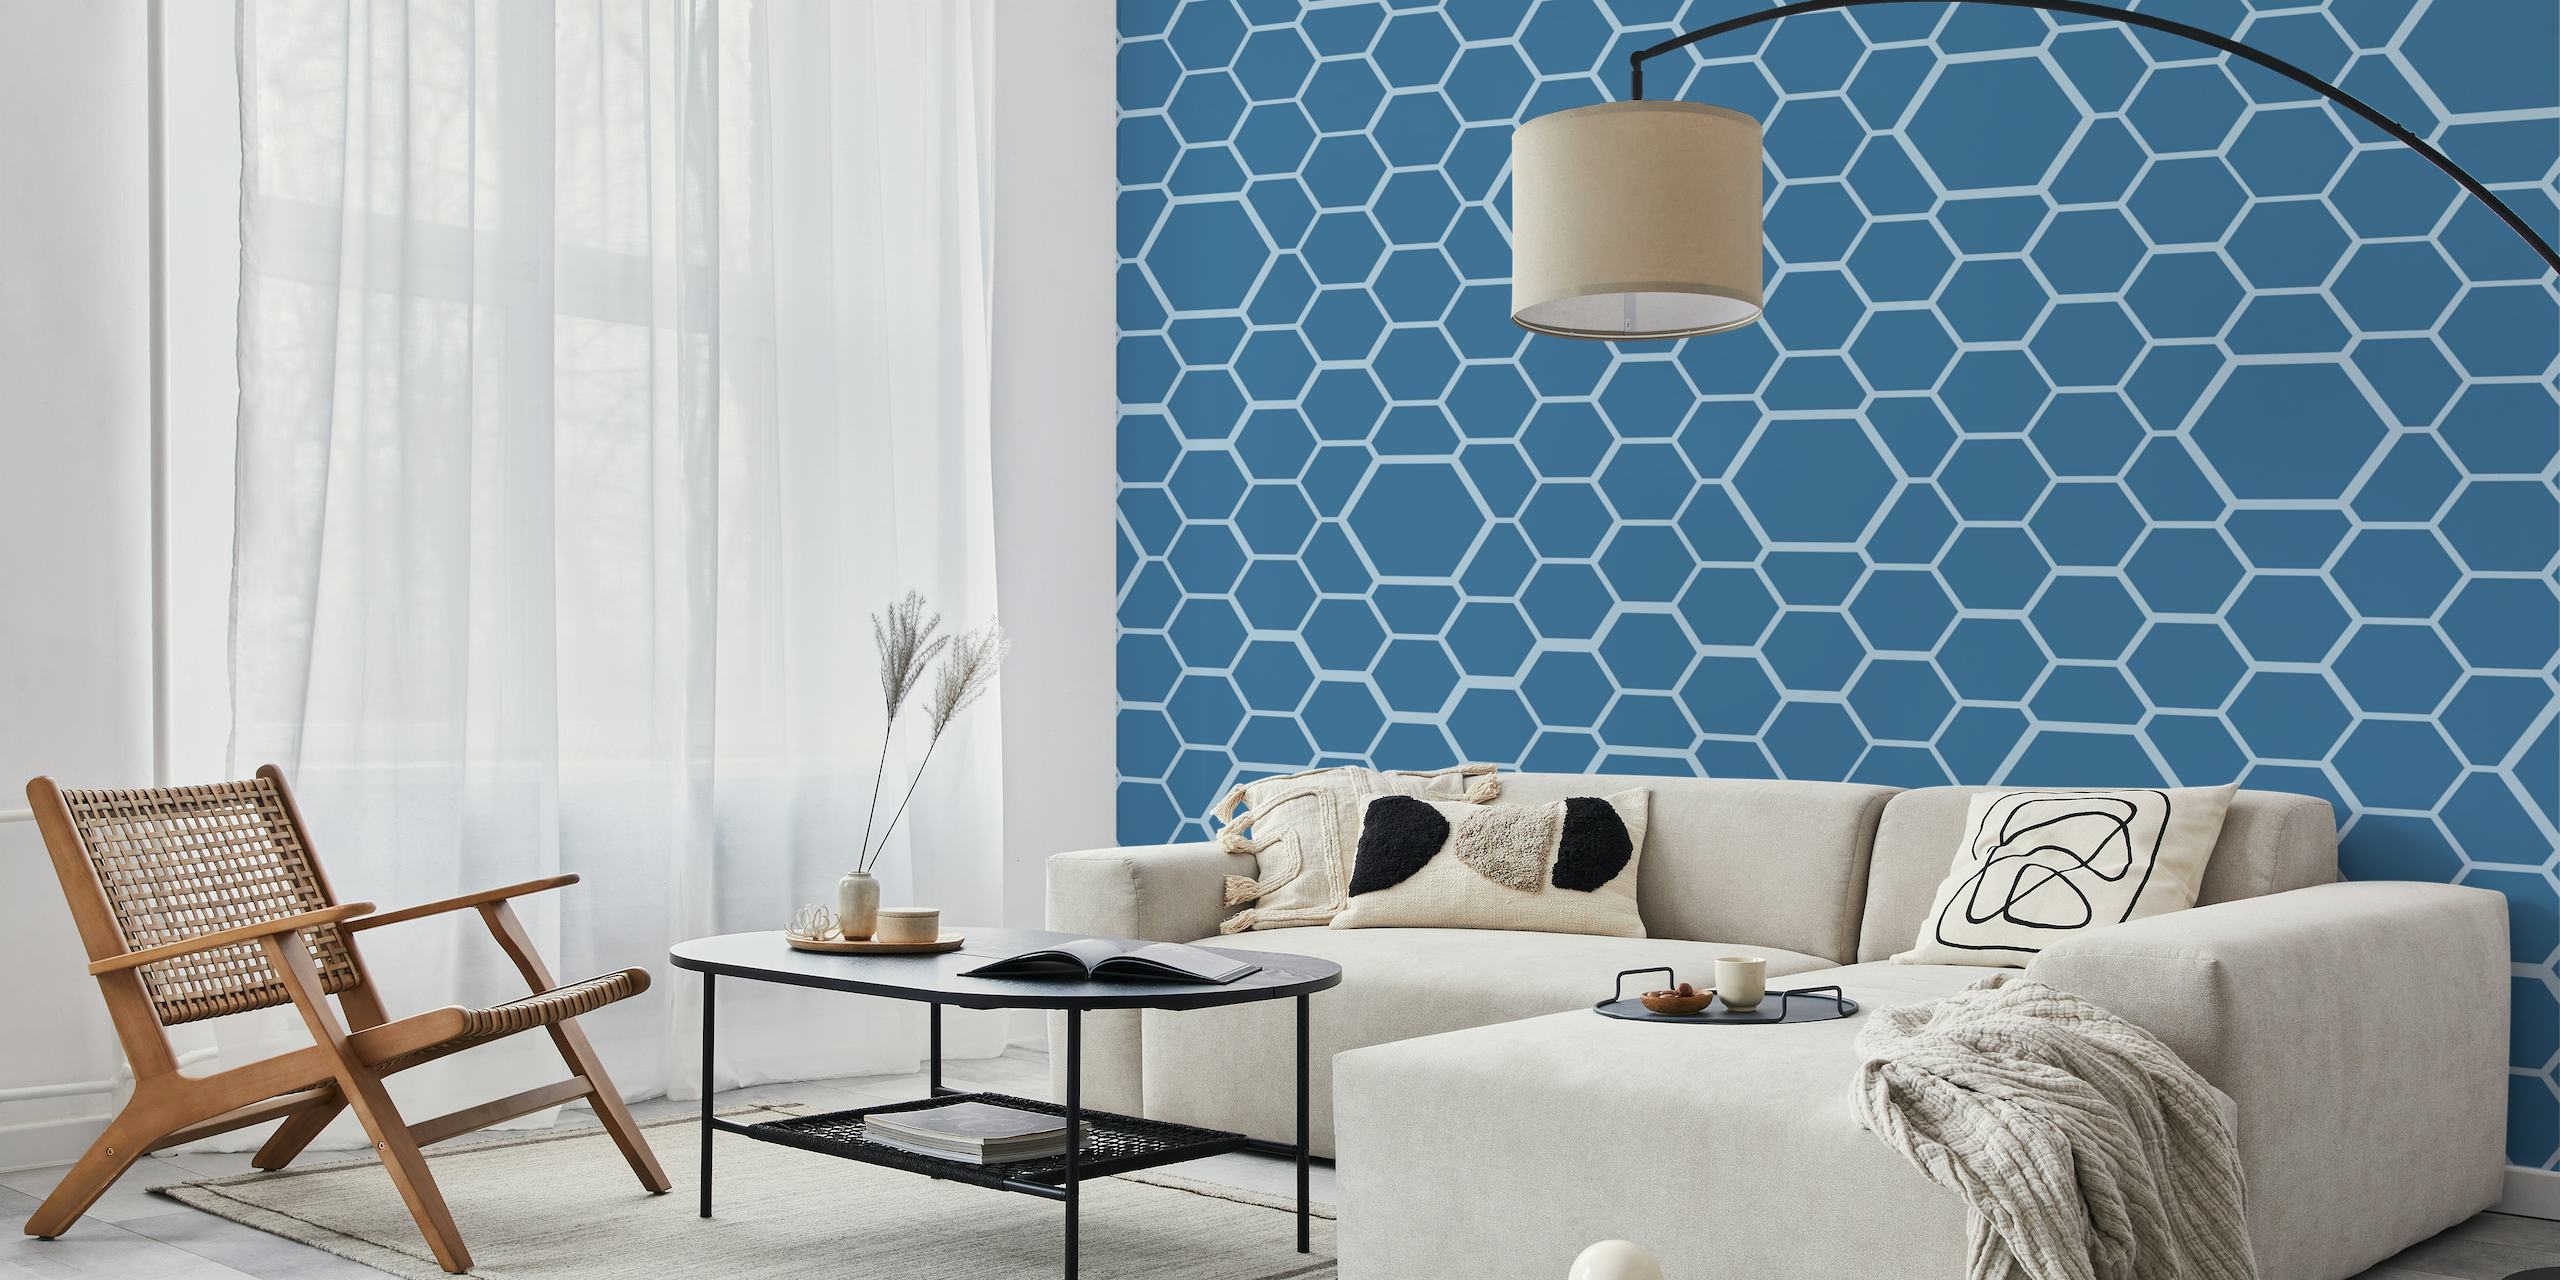 Honeycomb Blue Grid wallpaper